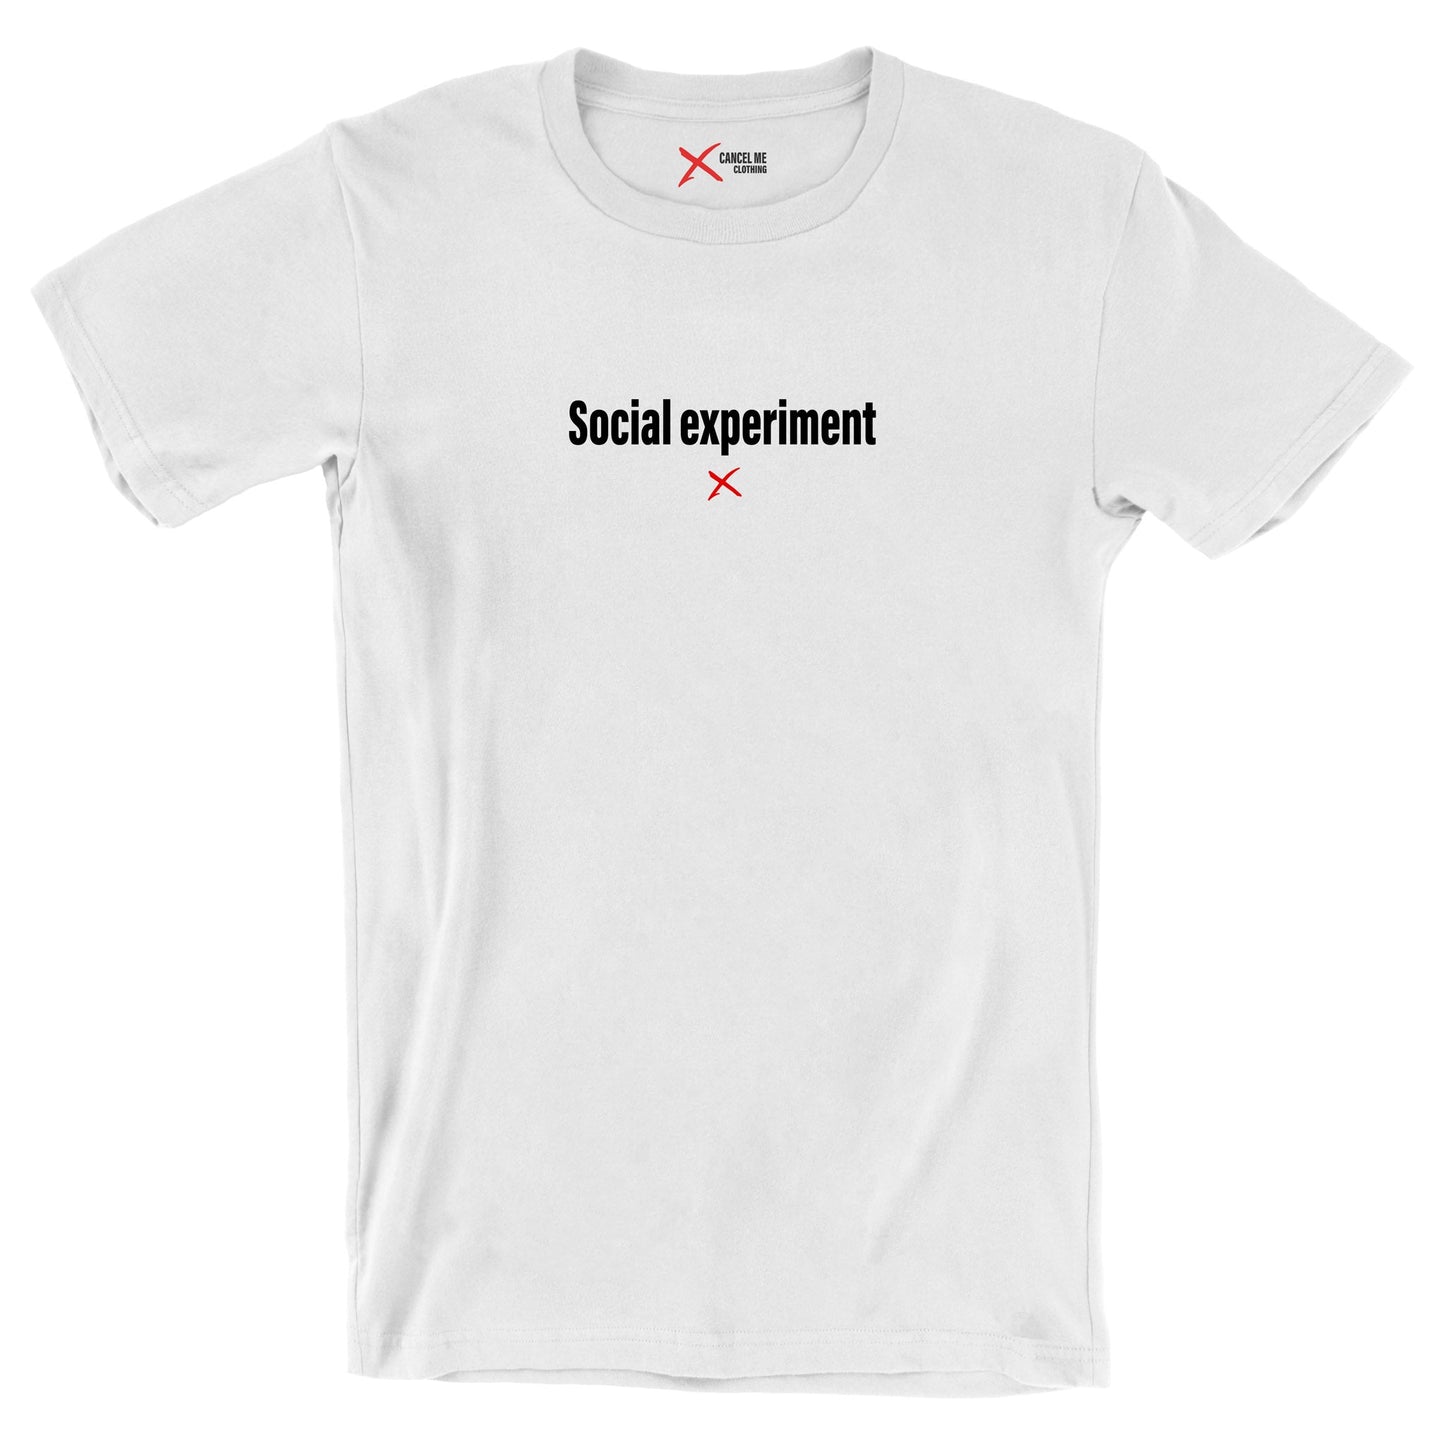 Social experiment - Shirt